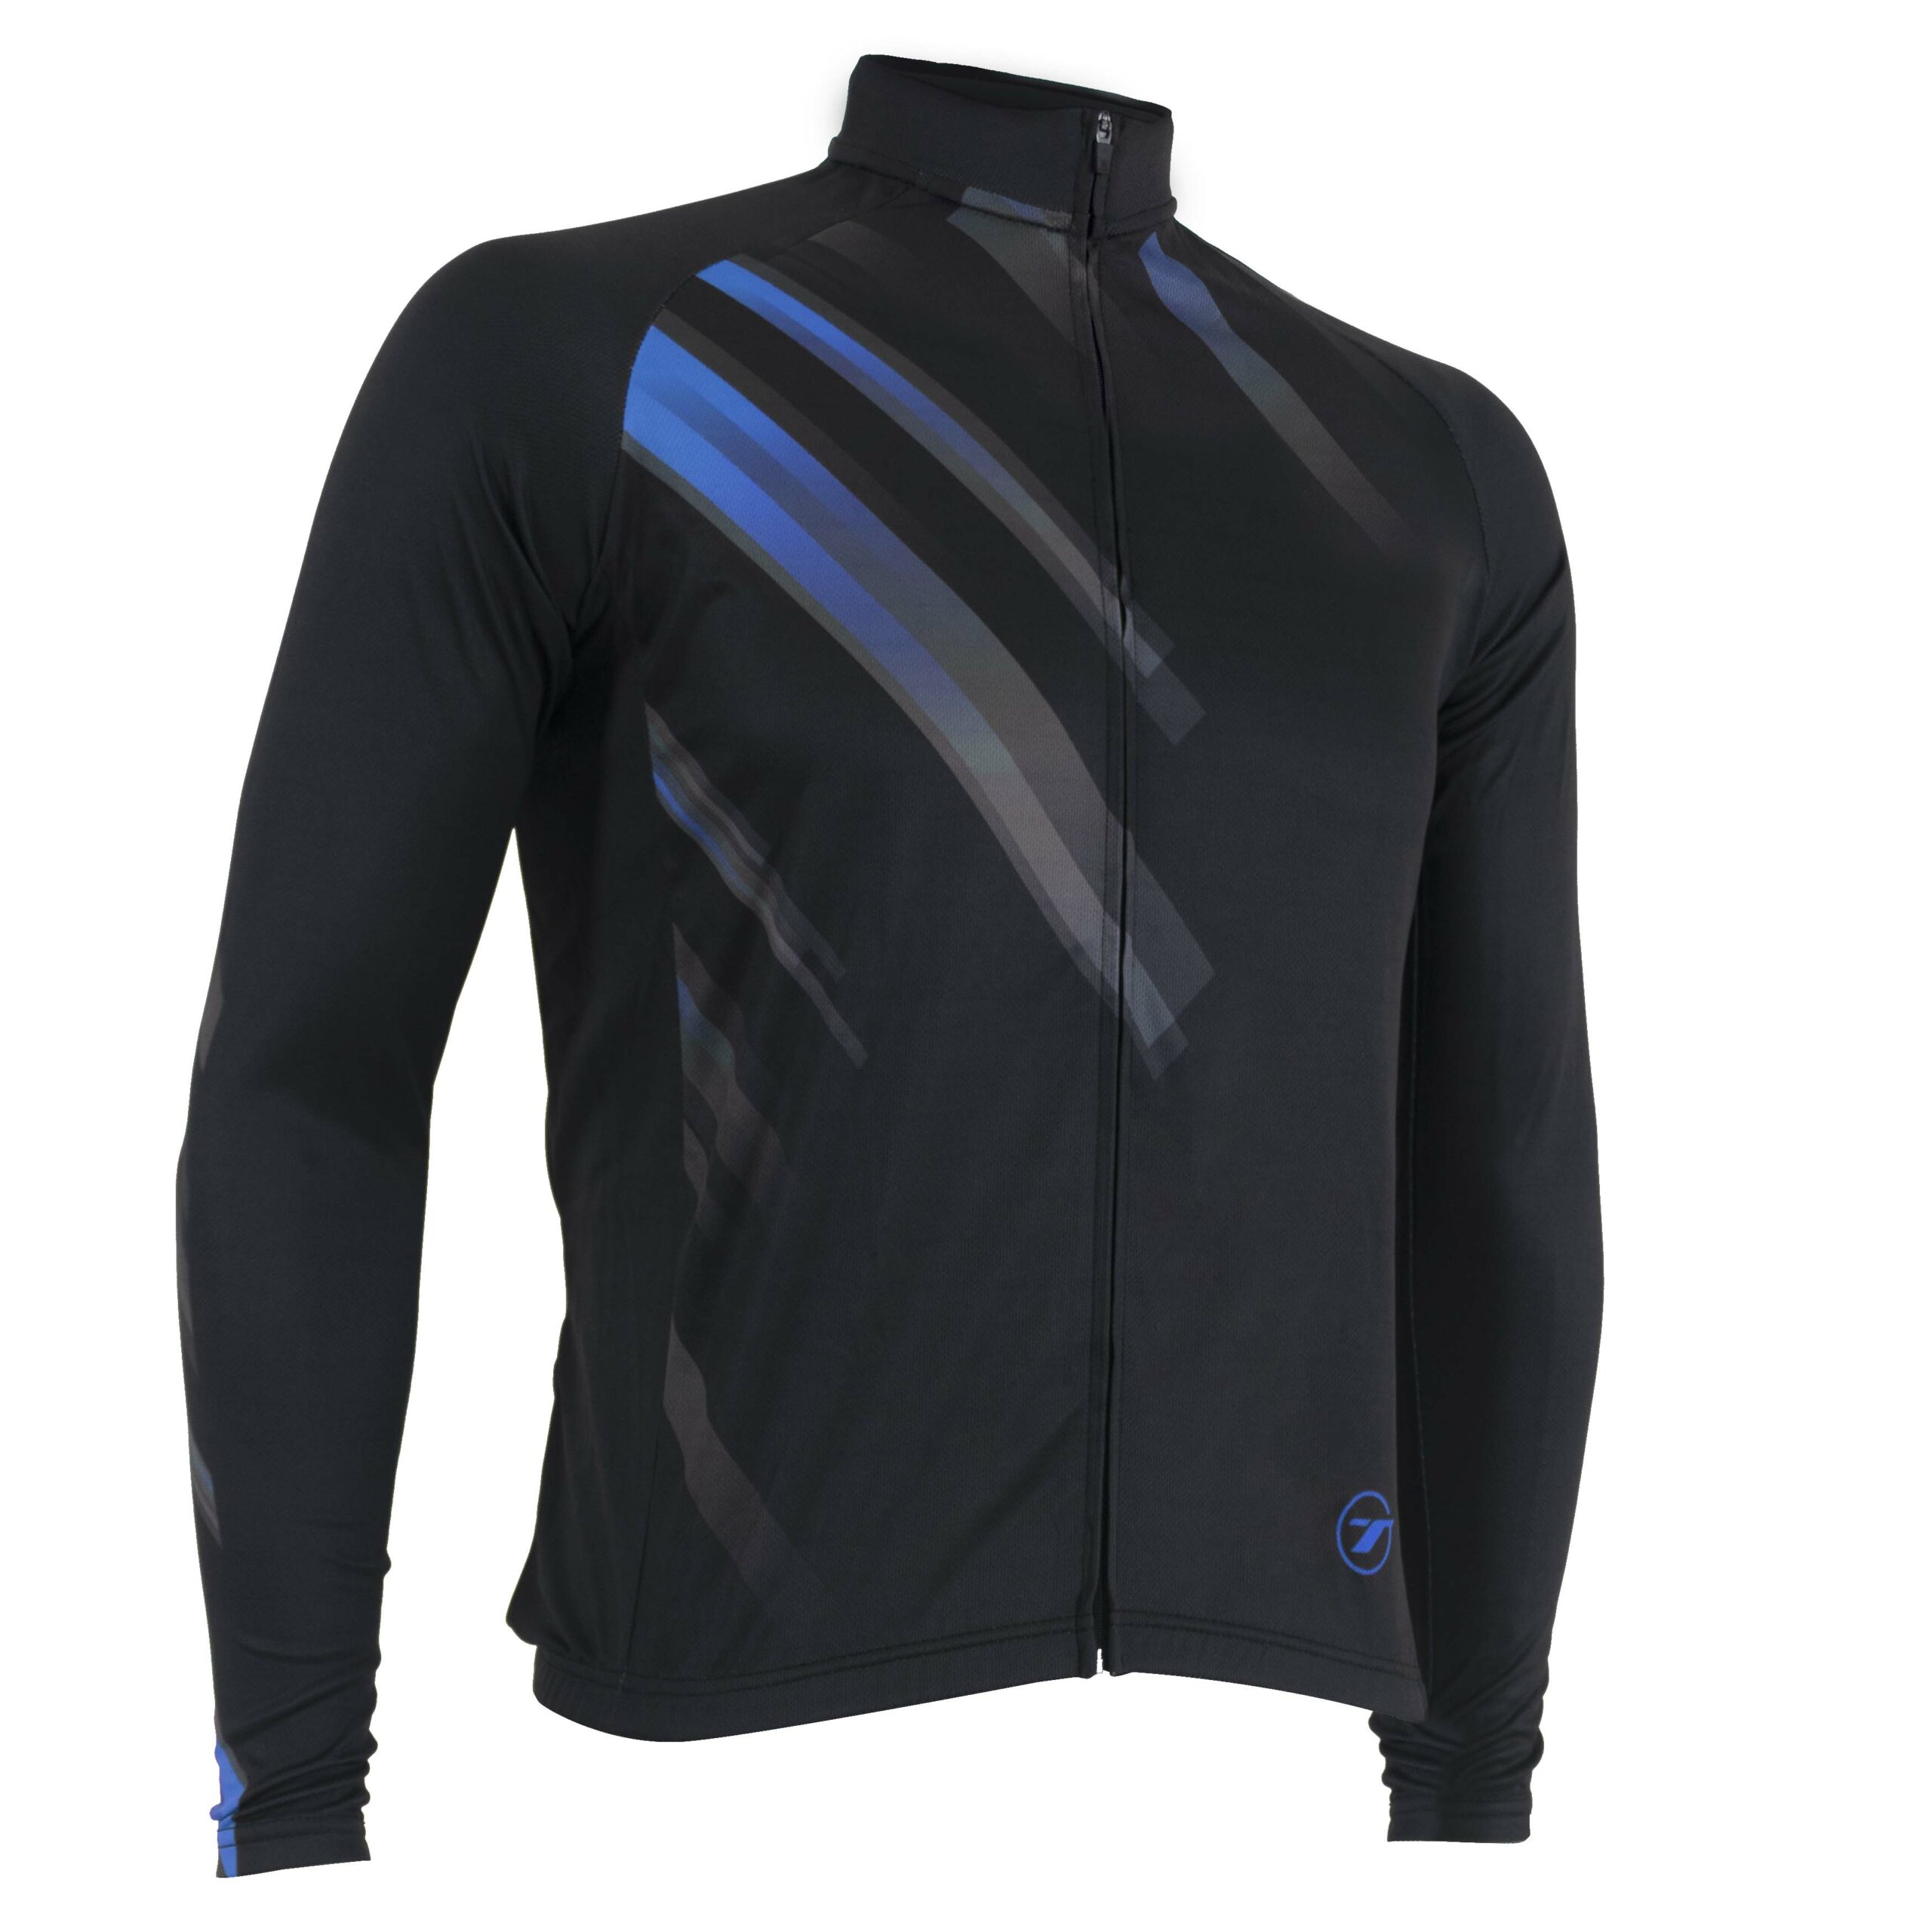 Camisa manga longa para ciclismo SUNNY | RIDE LINE - Preto/Azul, P